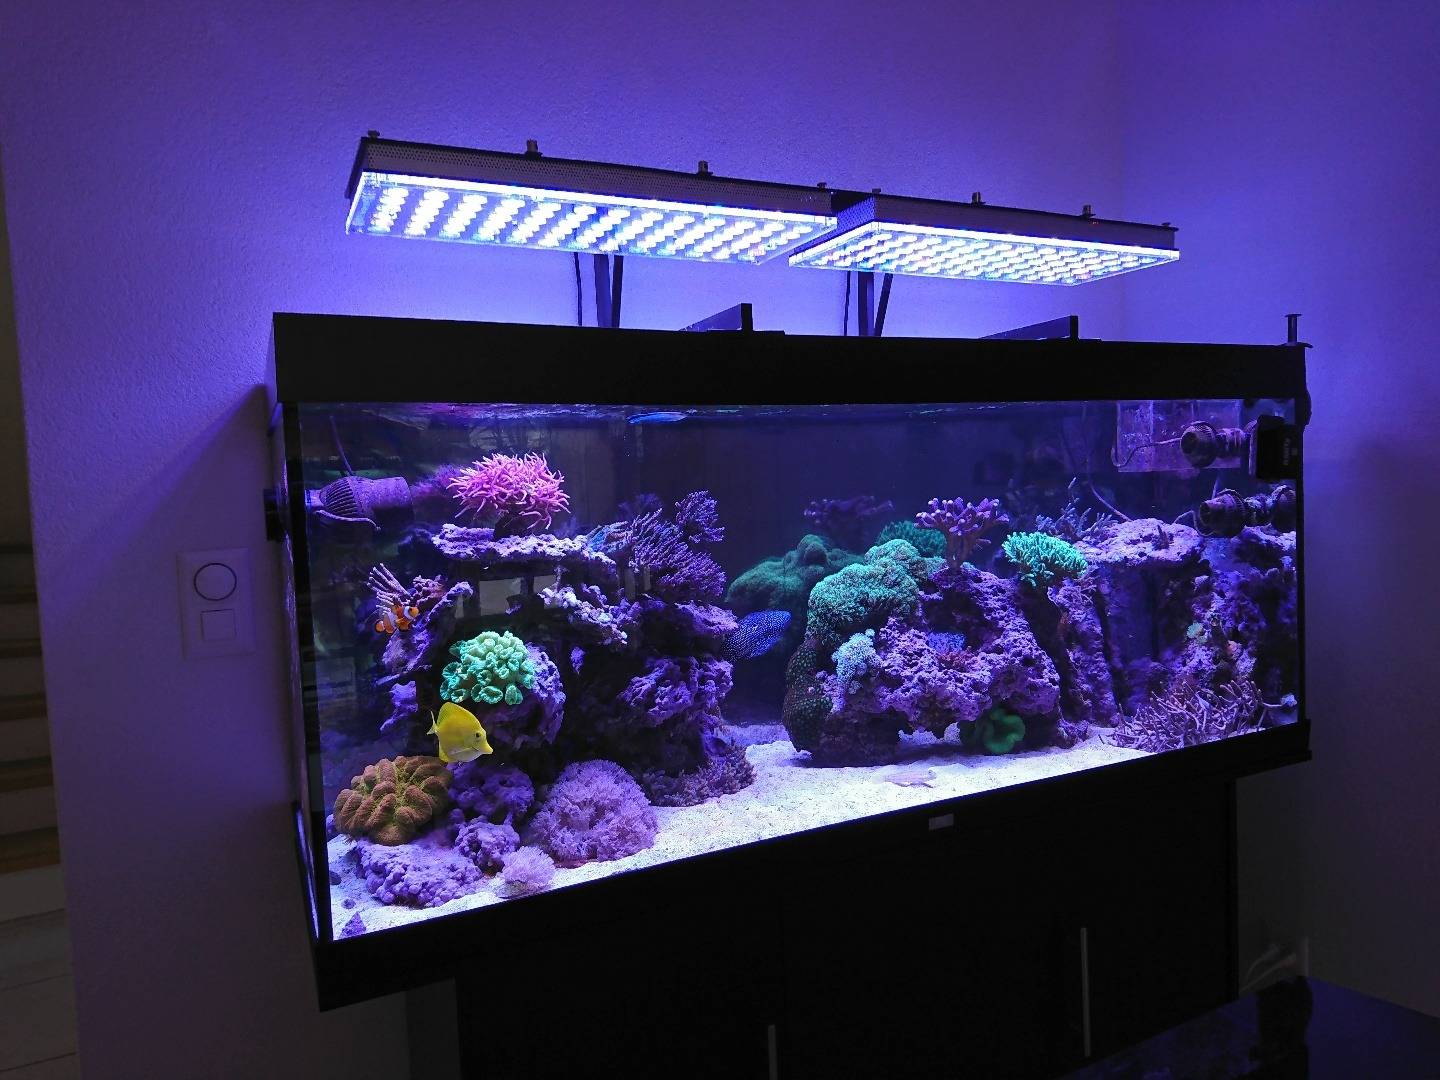 Cветодиодные светильники для аквариума (освещение, подсветка): светодиоды, лампы, led (лед), прожекторы, ленты, расчет